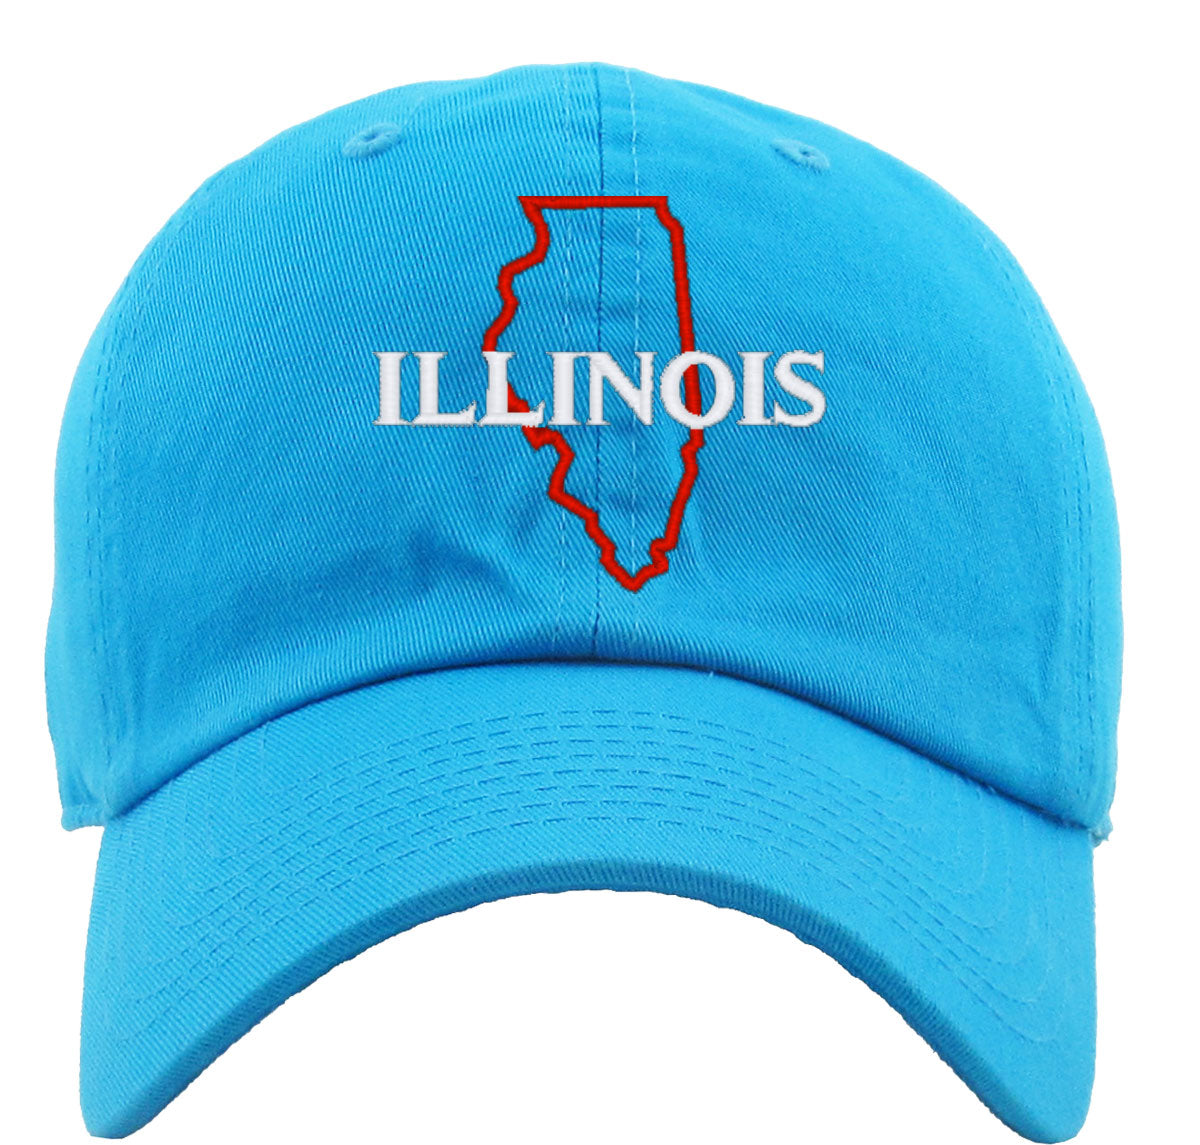 Illinois Premium Baseball Cap